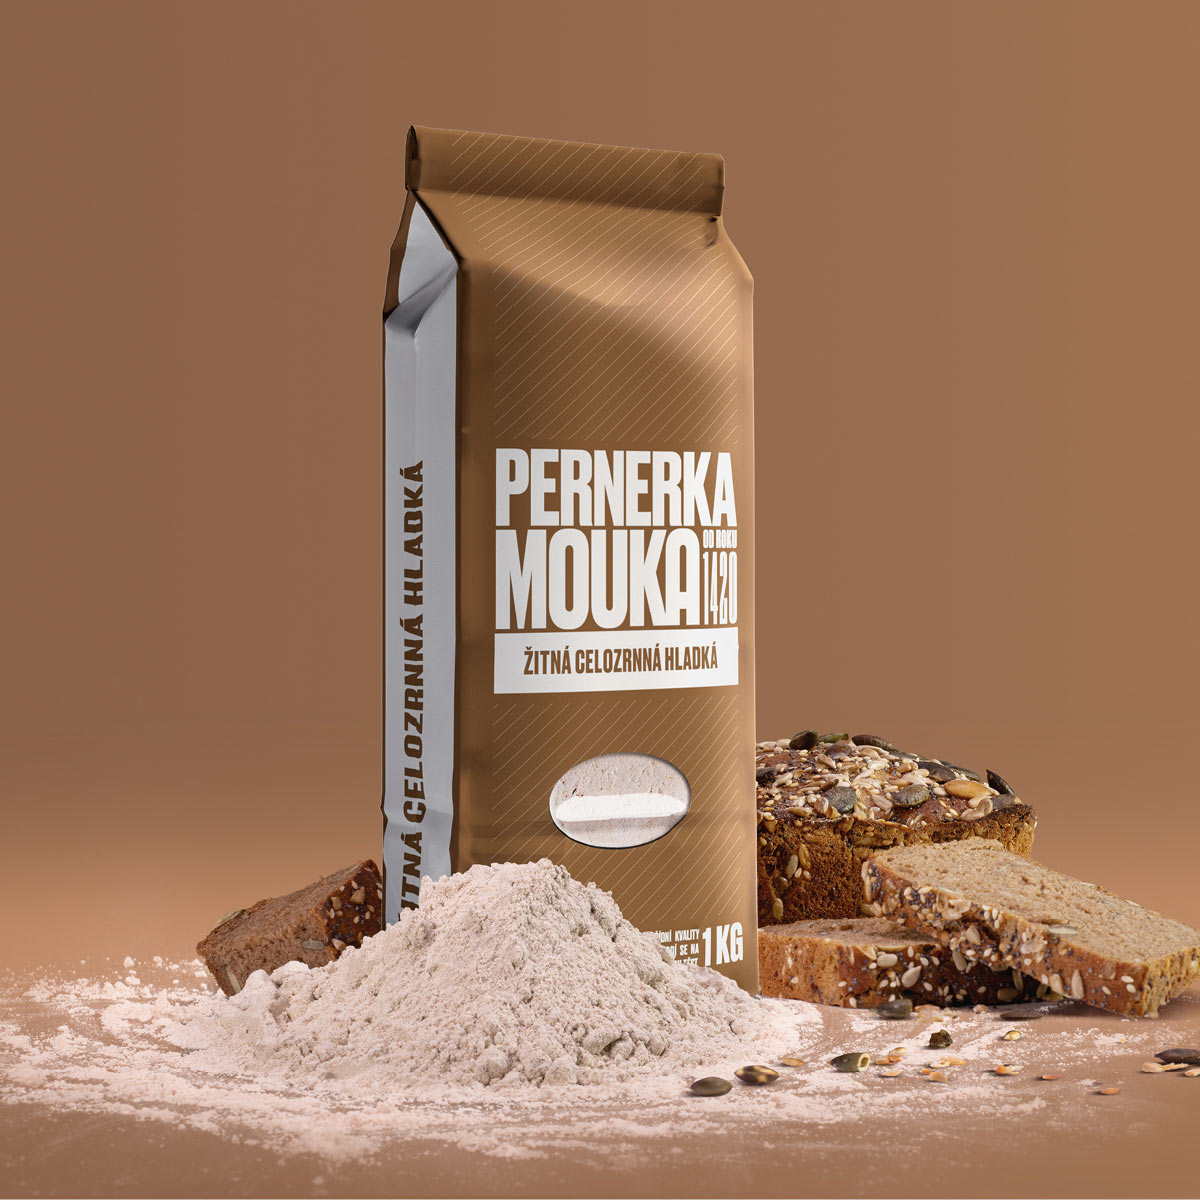 Package design for Pernerka flour.